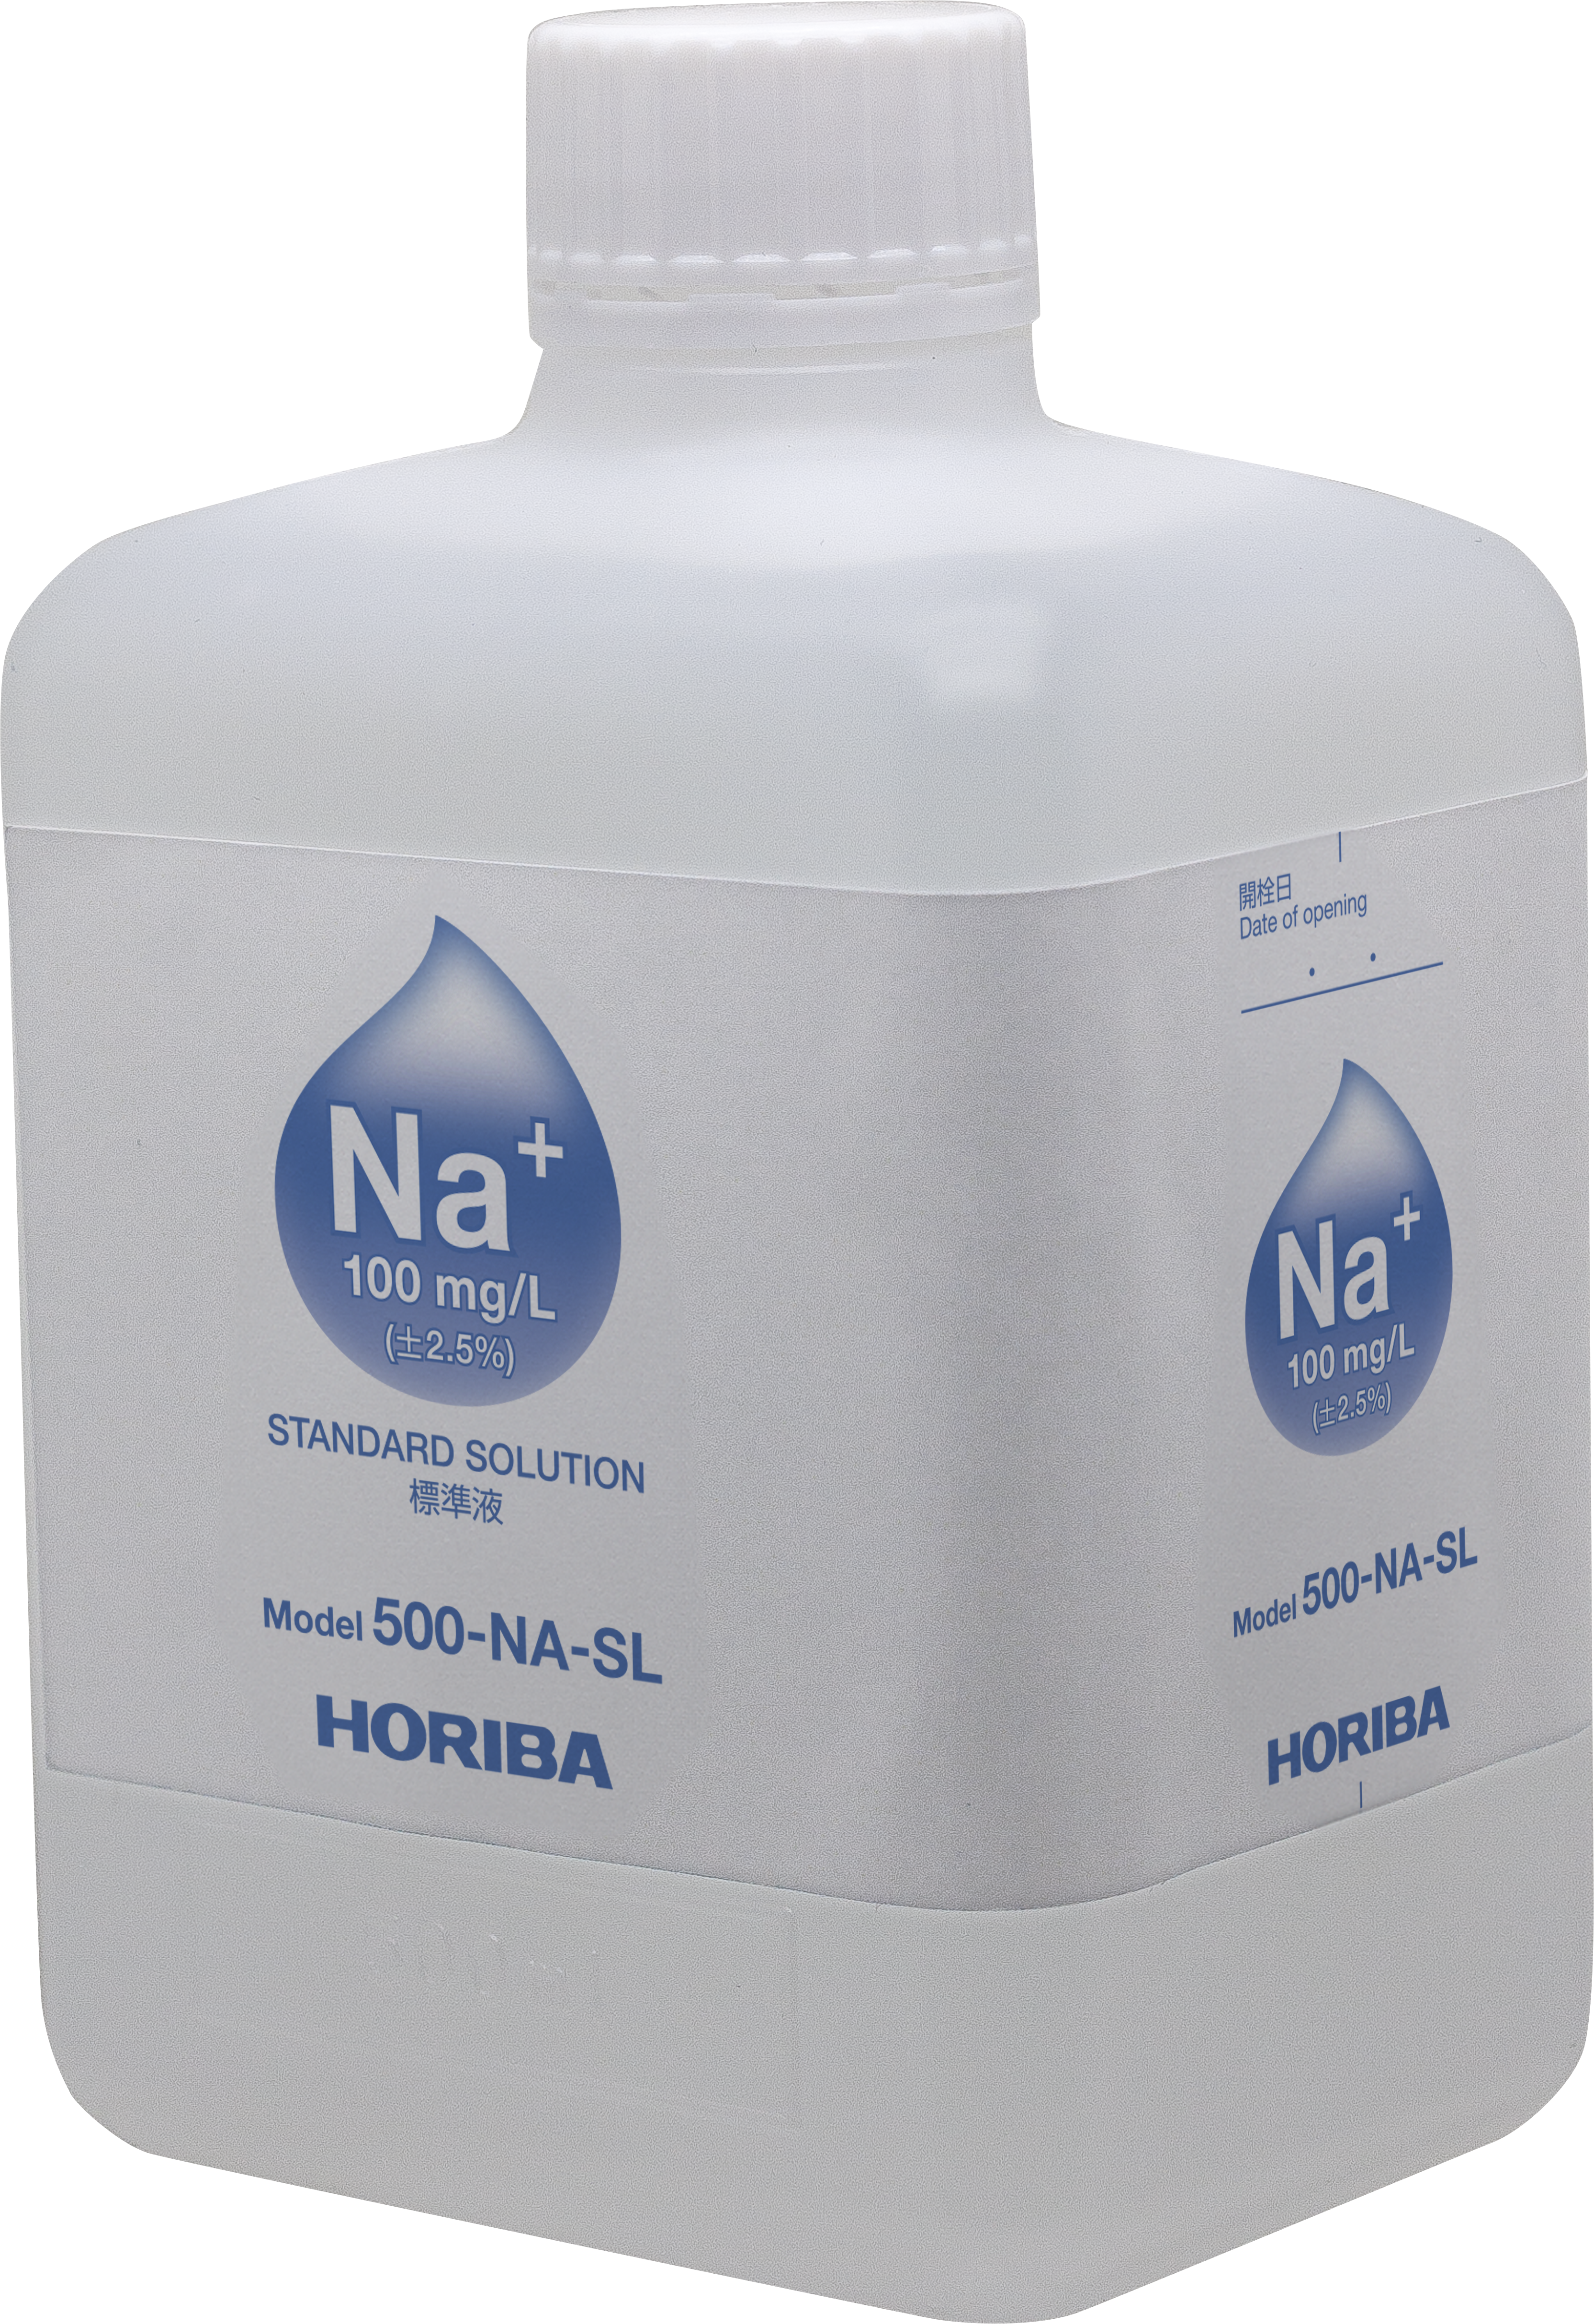 Horiba 100 mg/L Natrium-Ionen-Standardlösung, 500ml